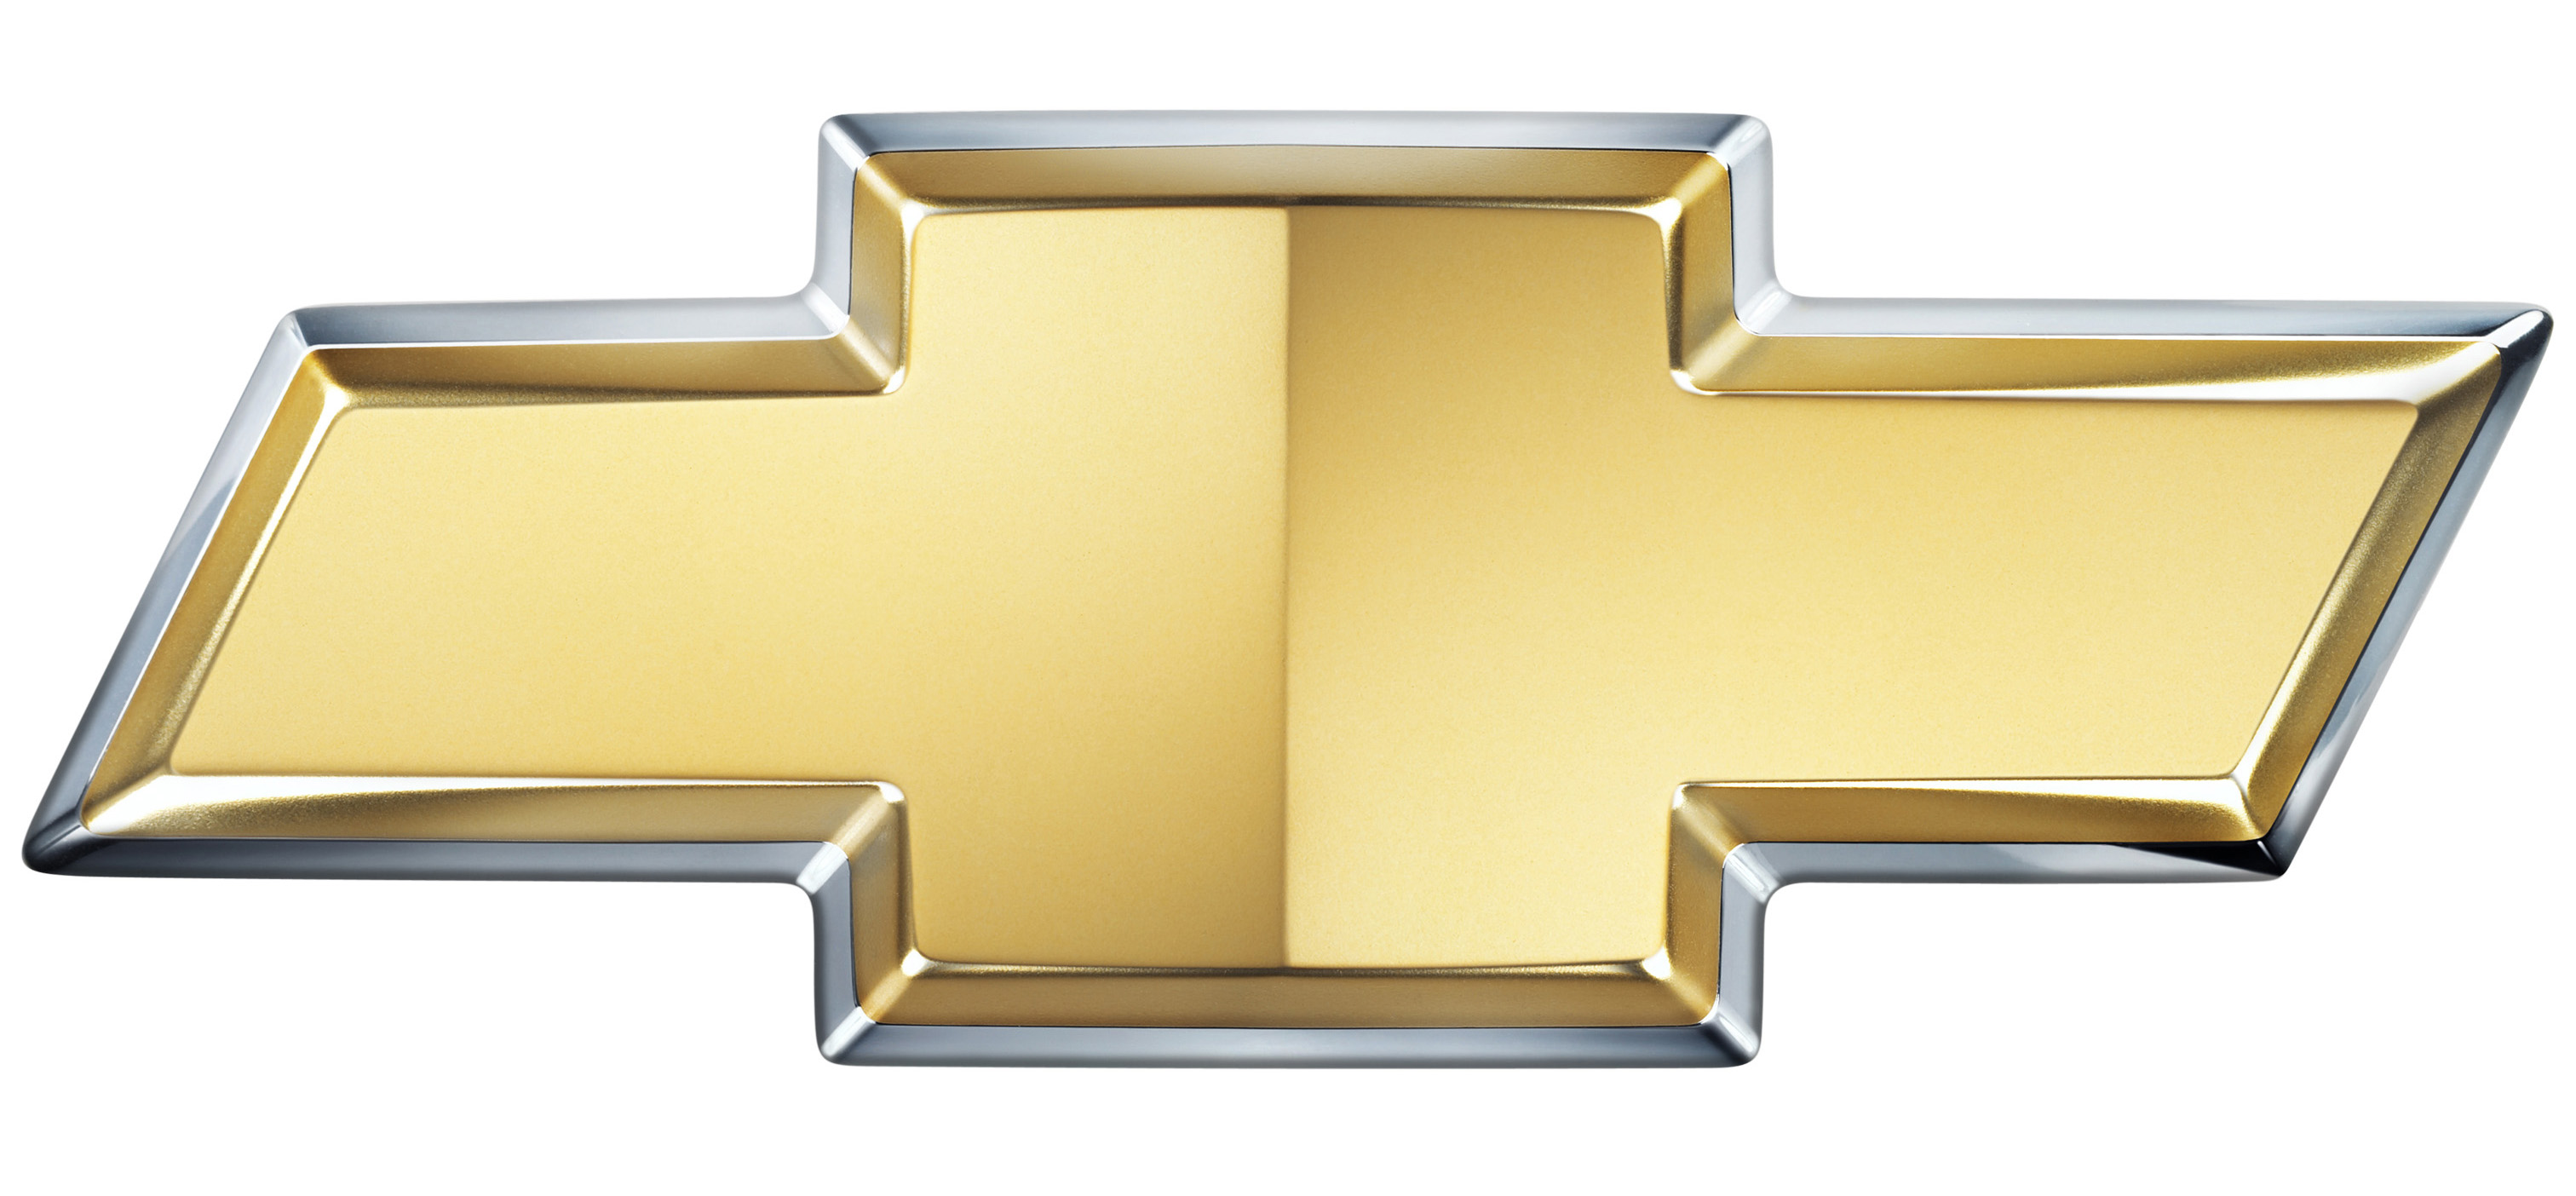 Image - chevy bowtie emblem